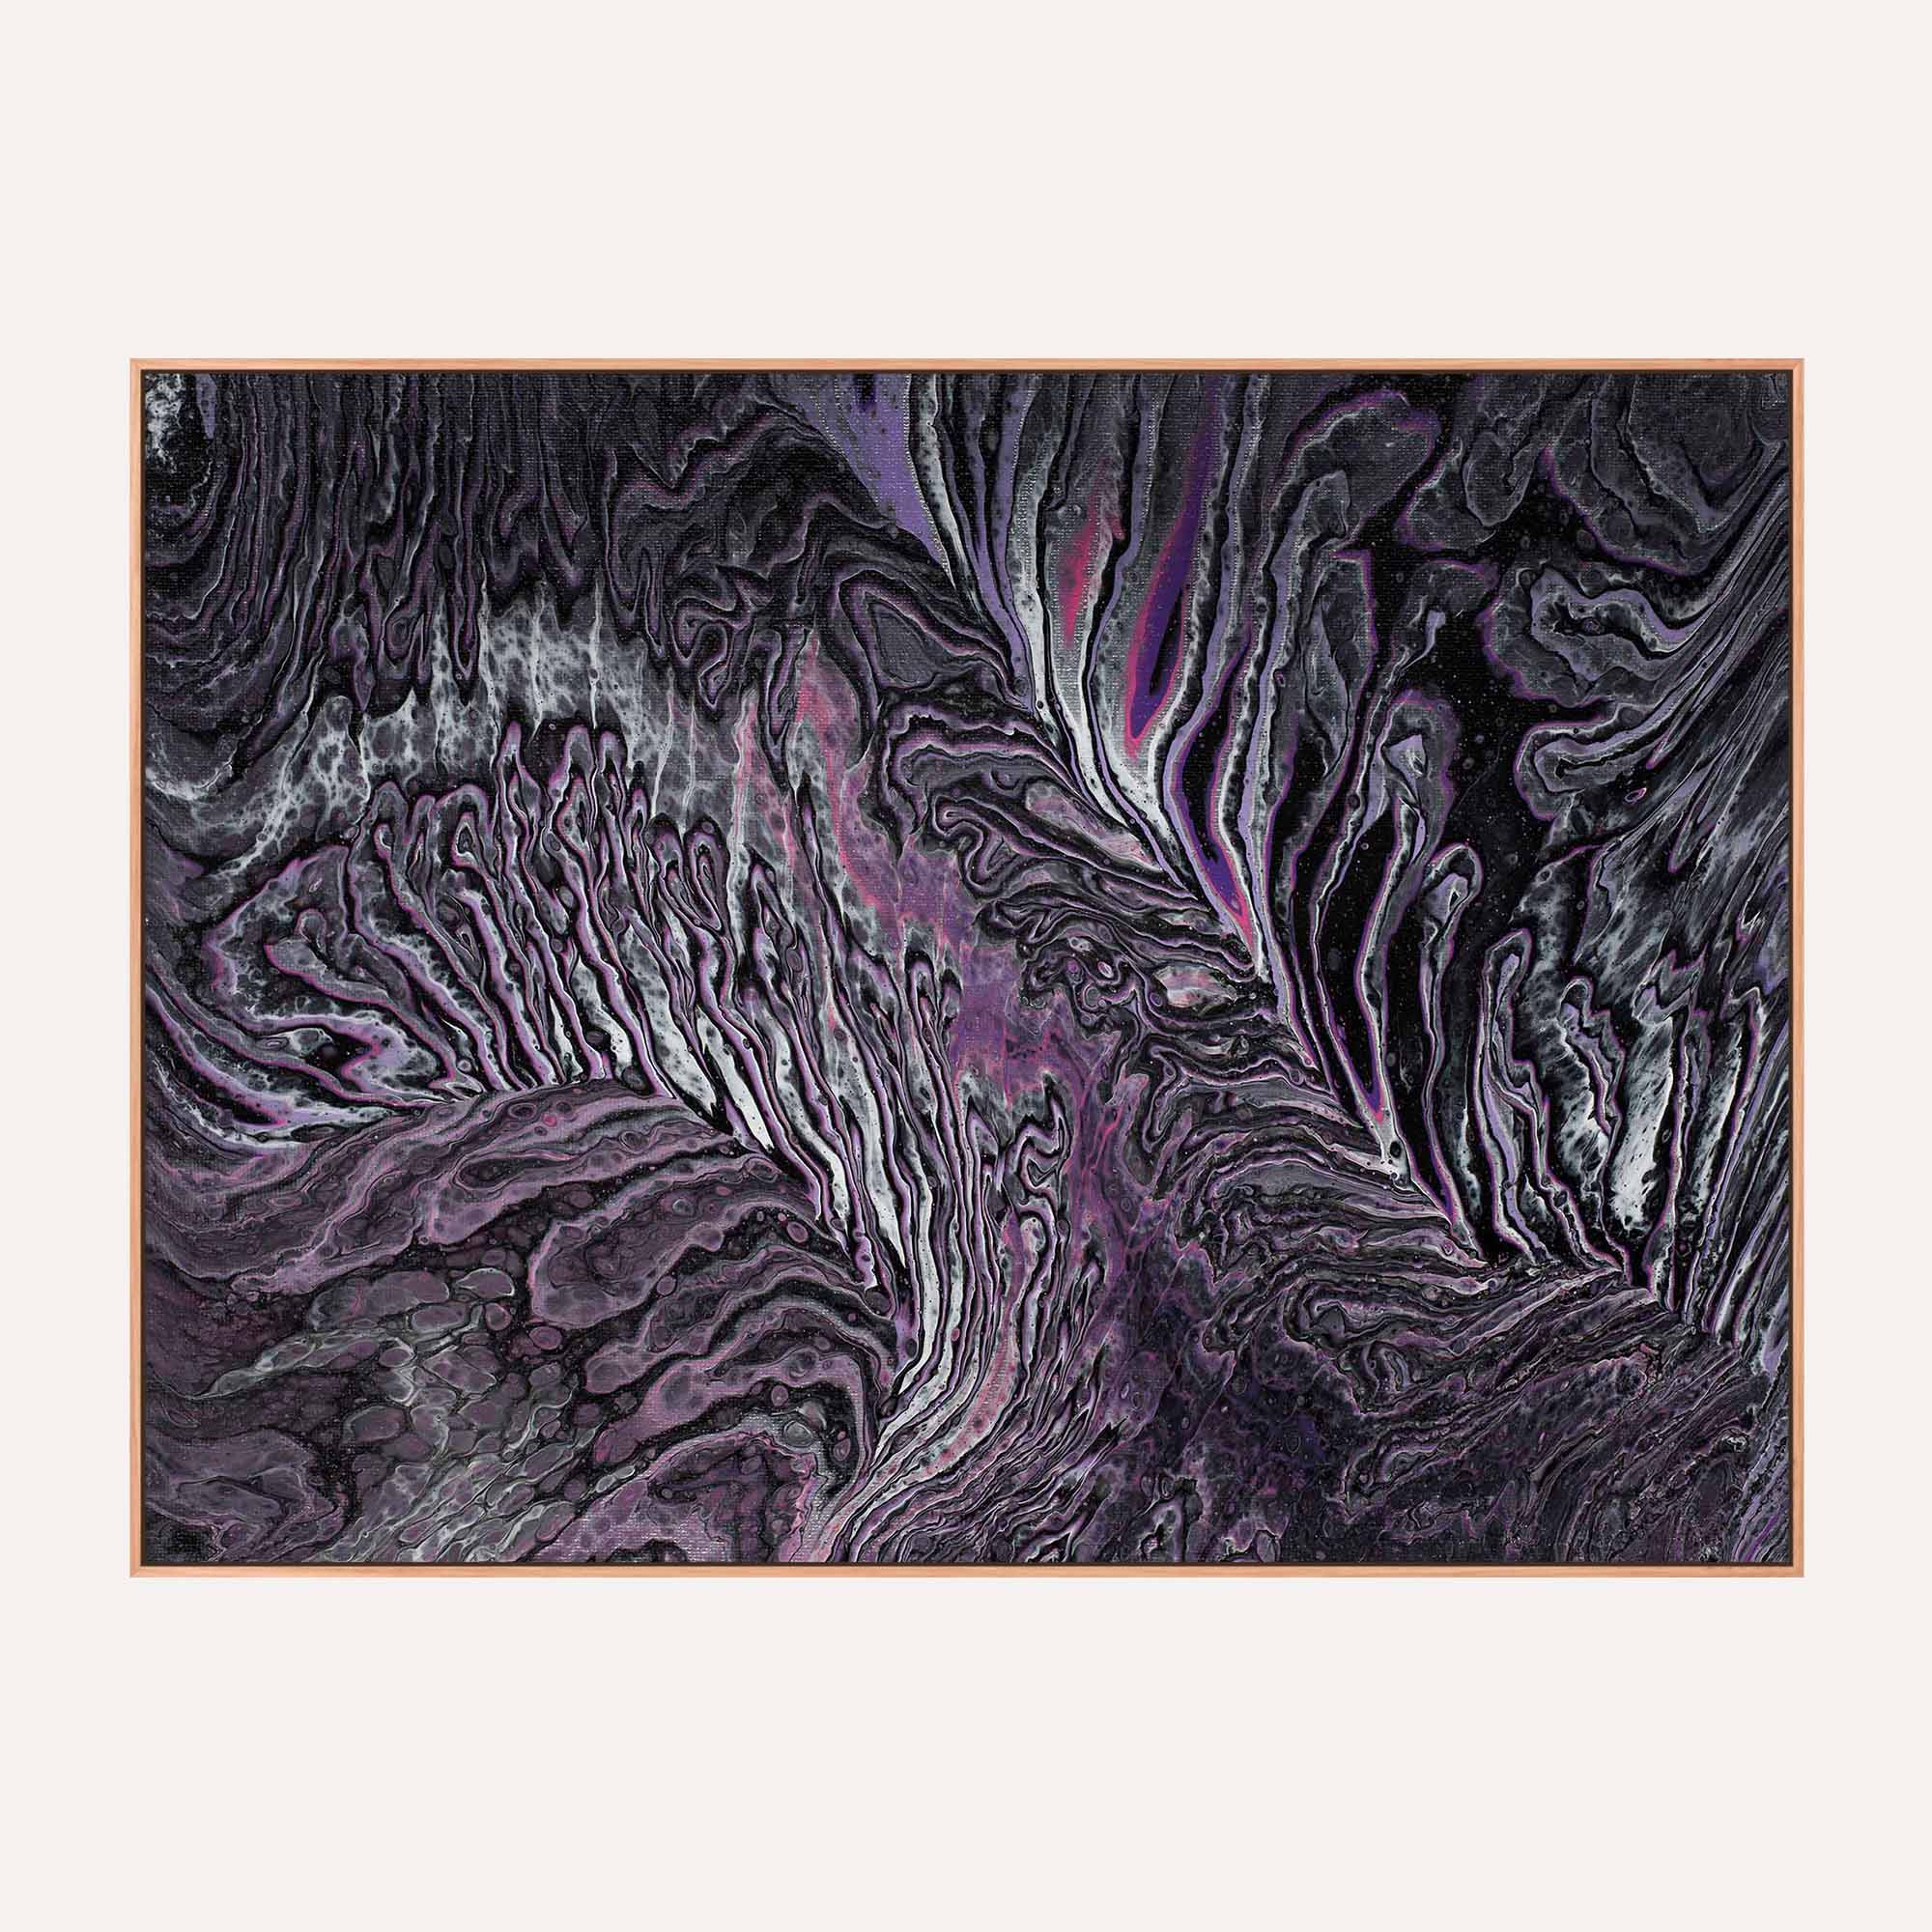 22. Purple Tide